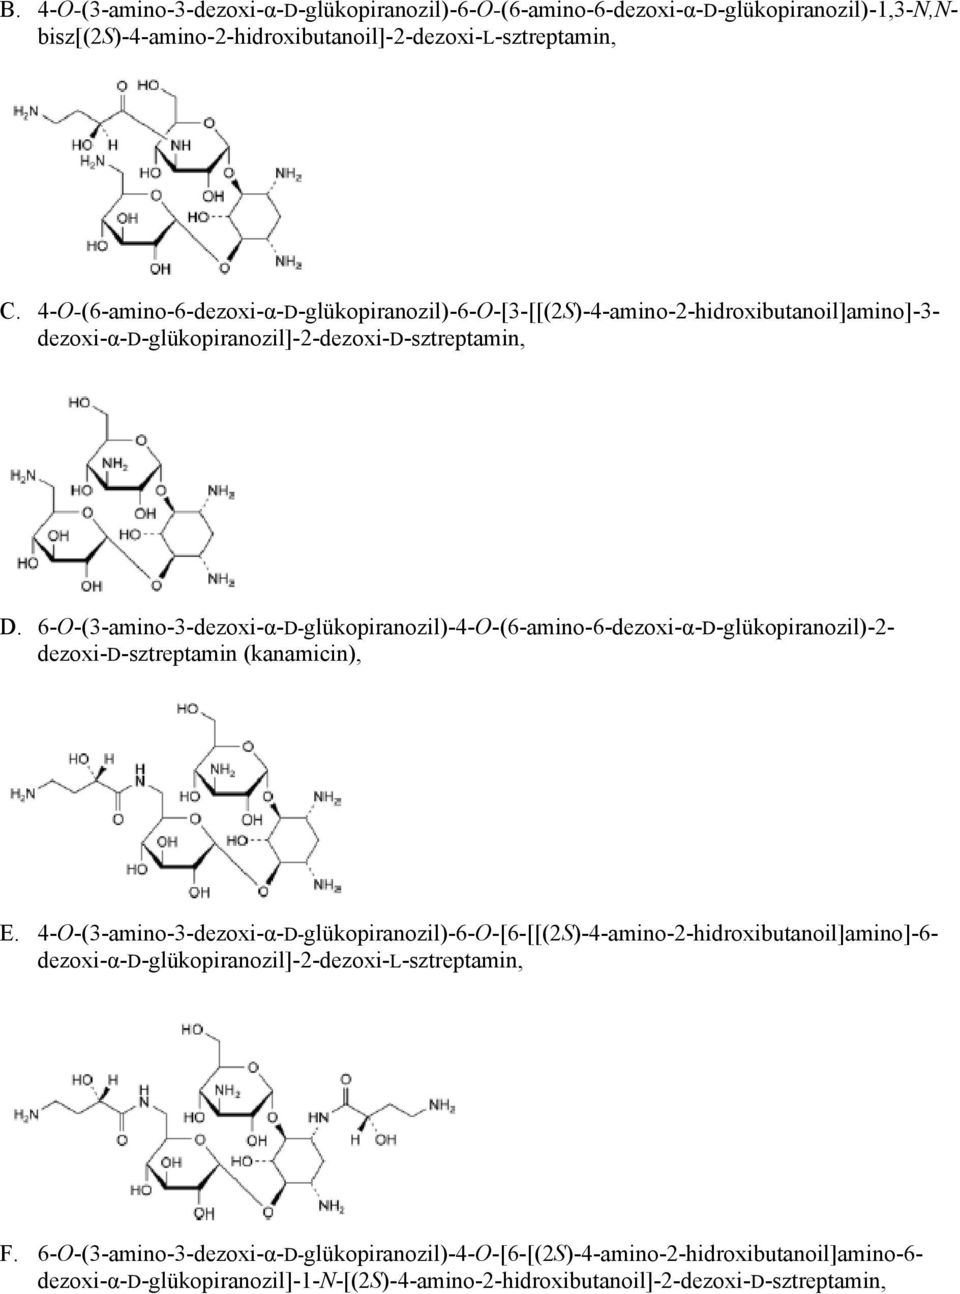 6-O-(3-amino-3-dezoxi-α-D-glükopiranozil)-4-O-(6-amino-6-dezoxi-α-D-glükopiranozil)-2- dezoxi-d-sztreptamin (kanamicin), E.